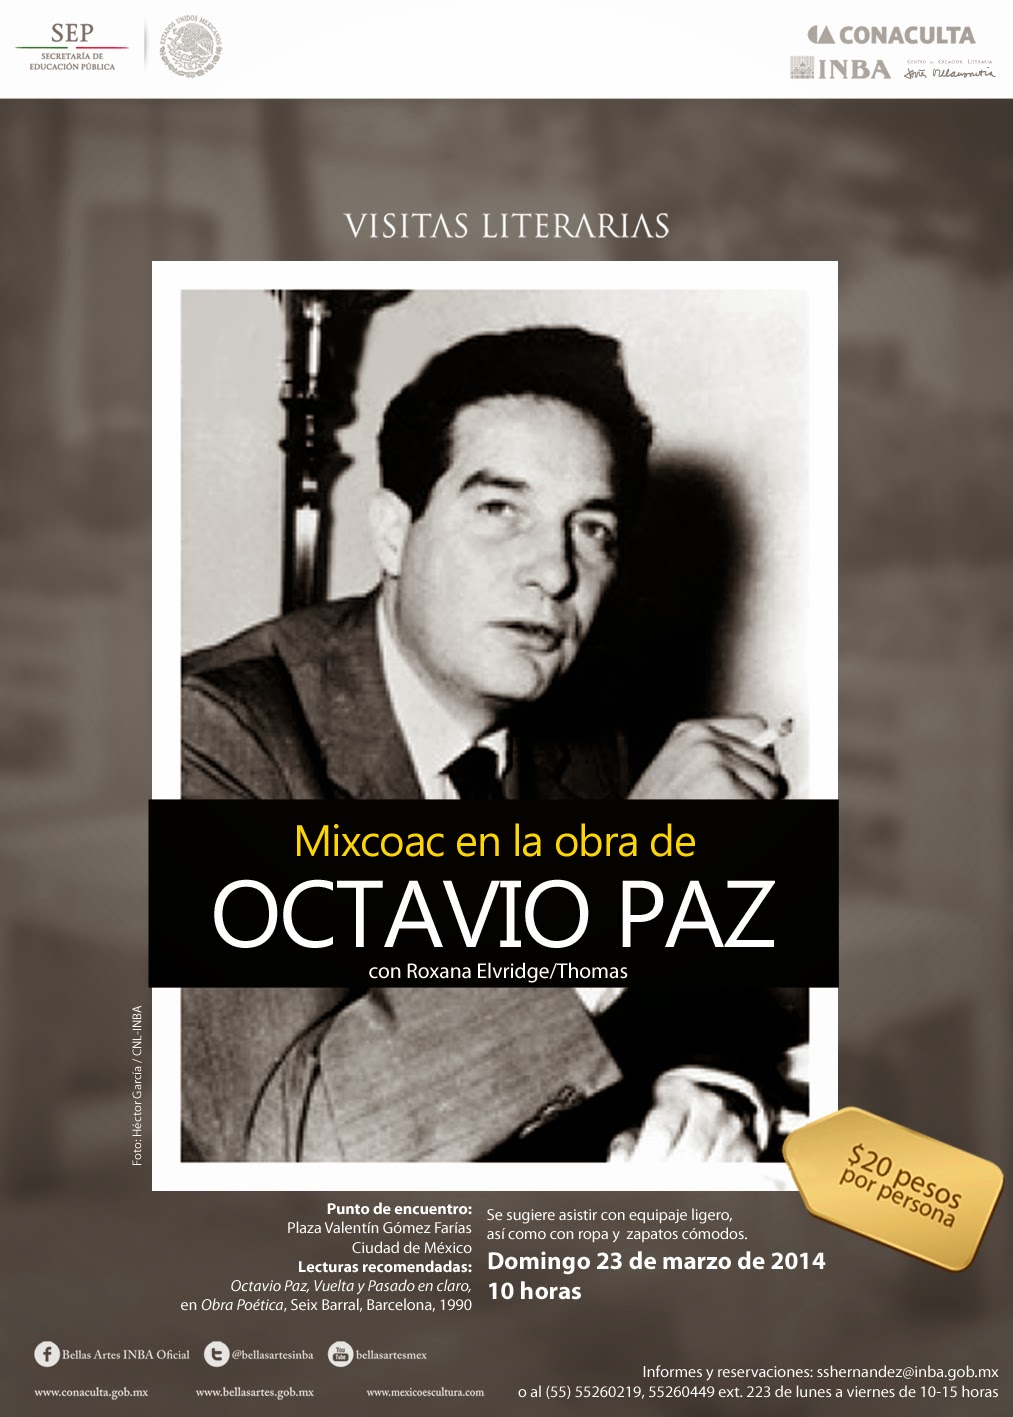 Visita literaria "Mixcoac en la obra de Octavio Paz" el próximo Domingo